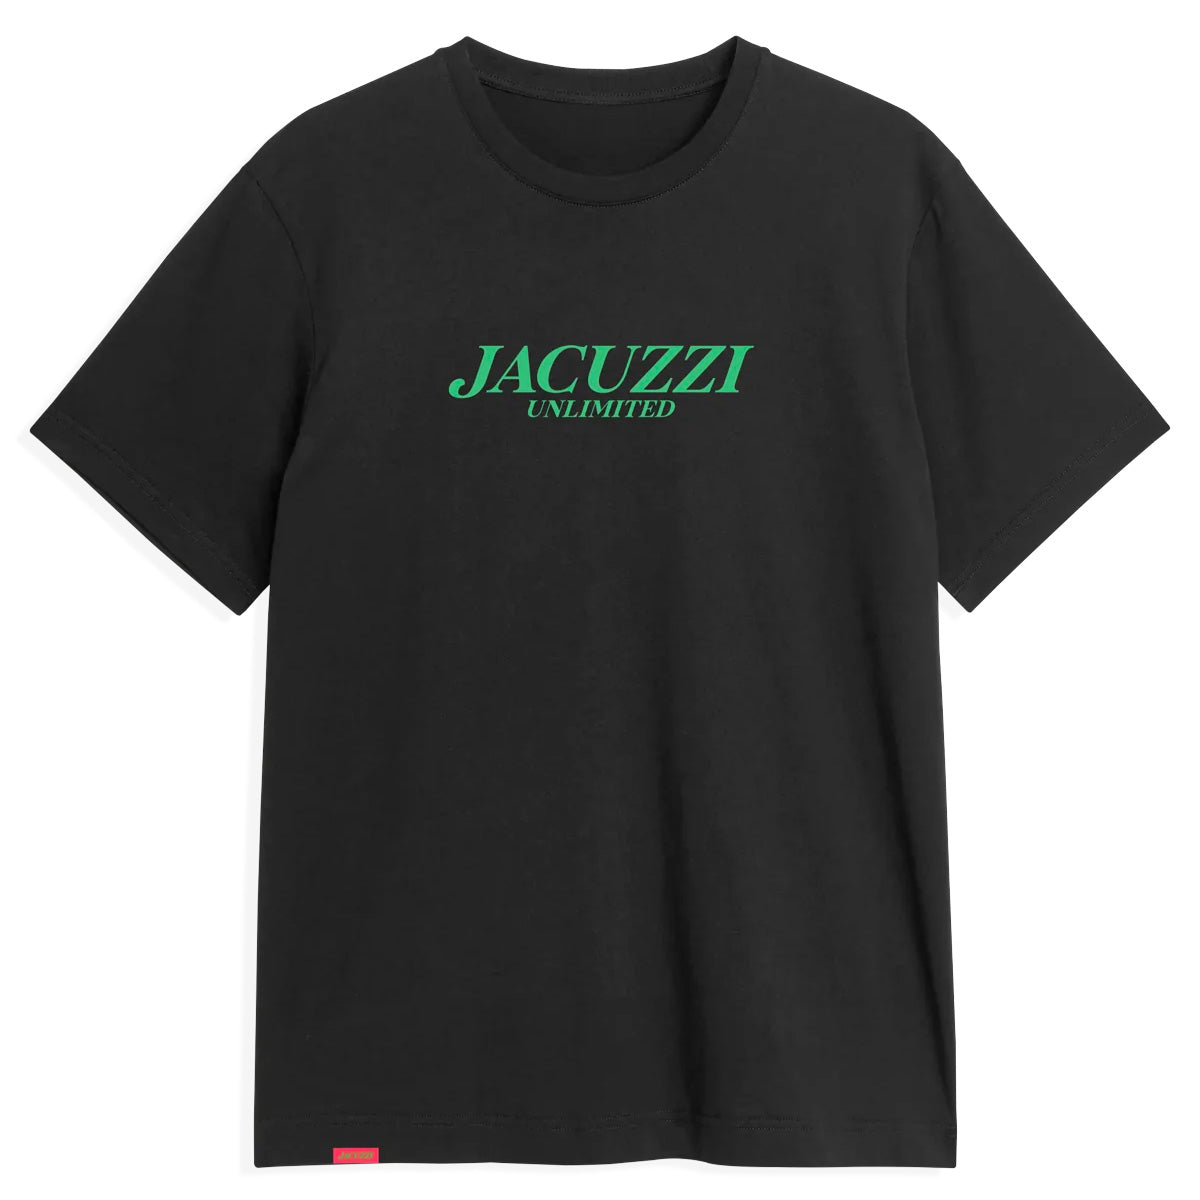 Jacuzzi Unlimited Unlimited Flavour T-shirt - Black